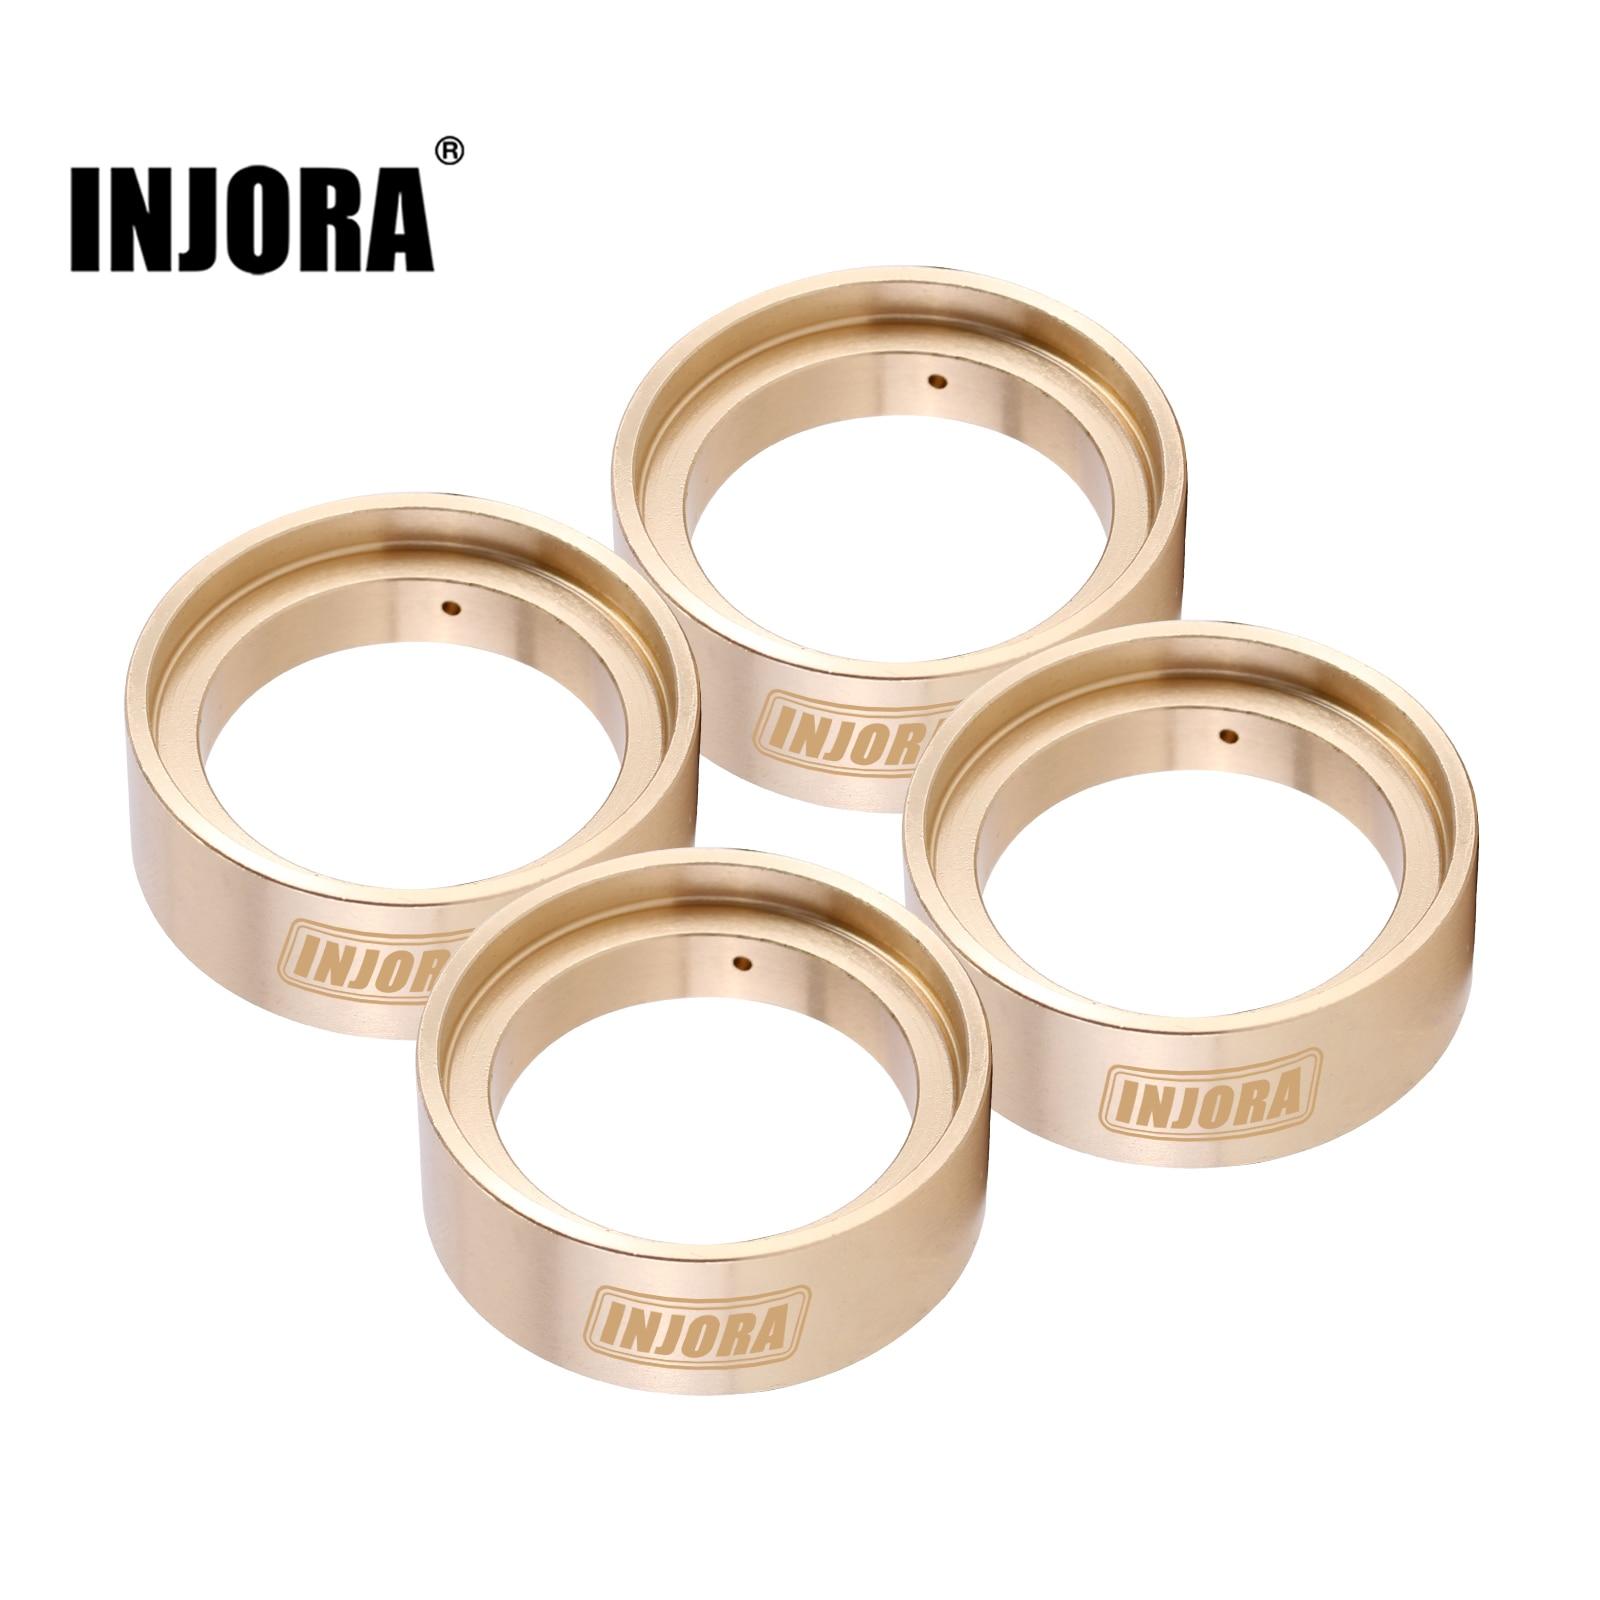 INJORA-29g-pcs-Brass-Wheel-Weights-Inner-Rings-for-1-18-RC-Crawler-TRX4M-Stock-Tires.jpg